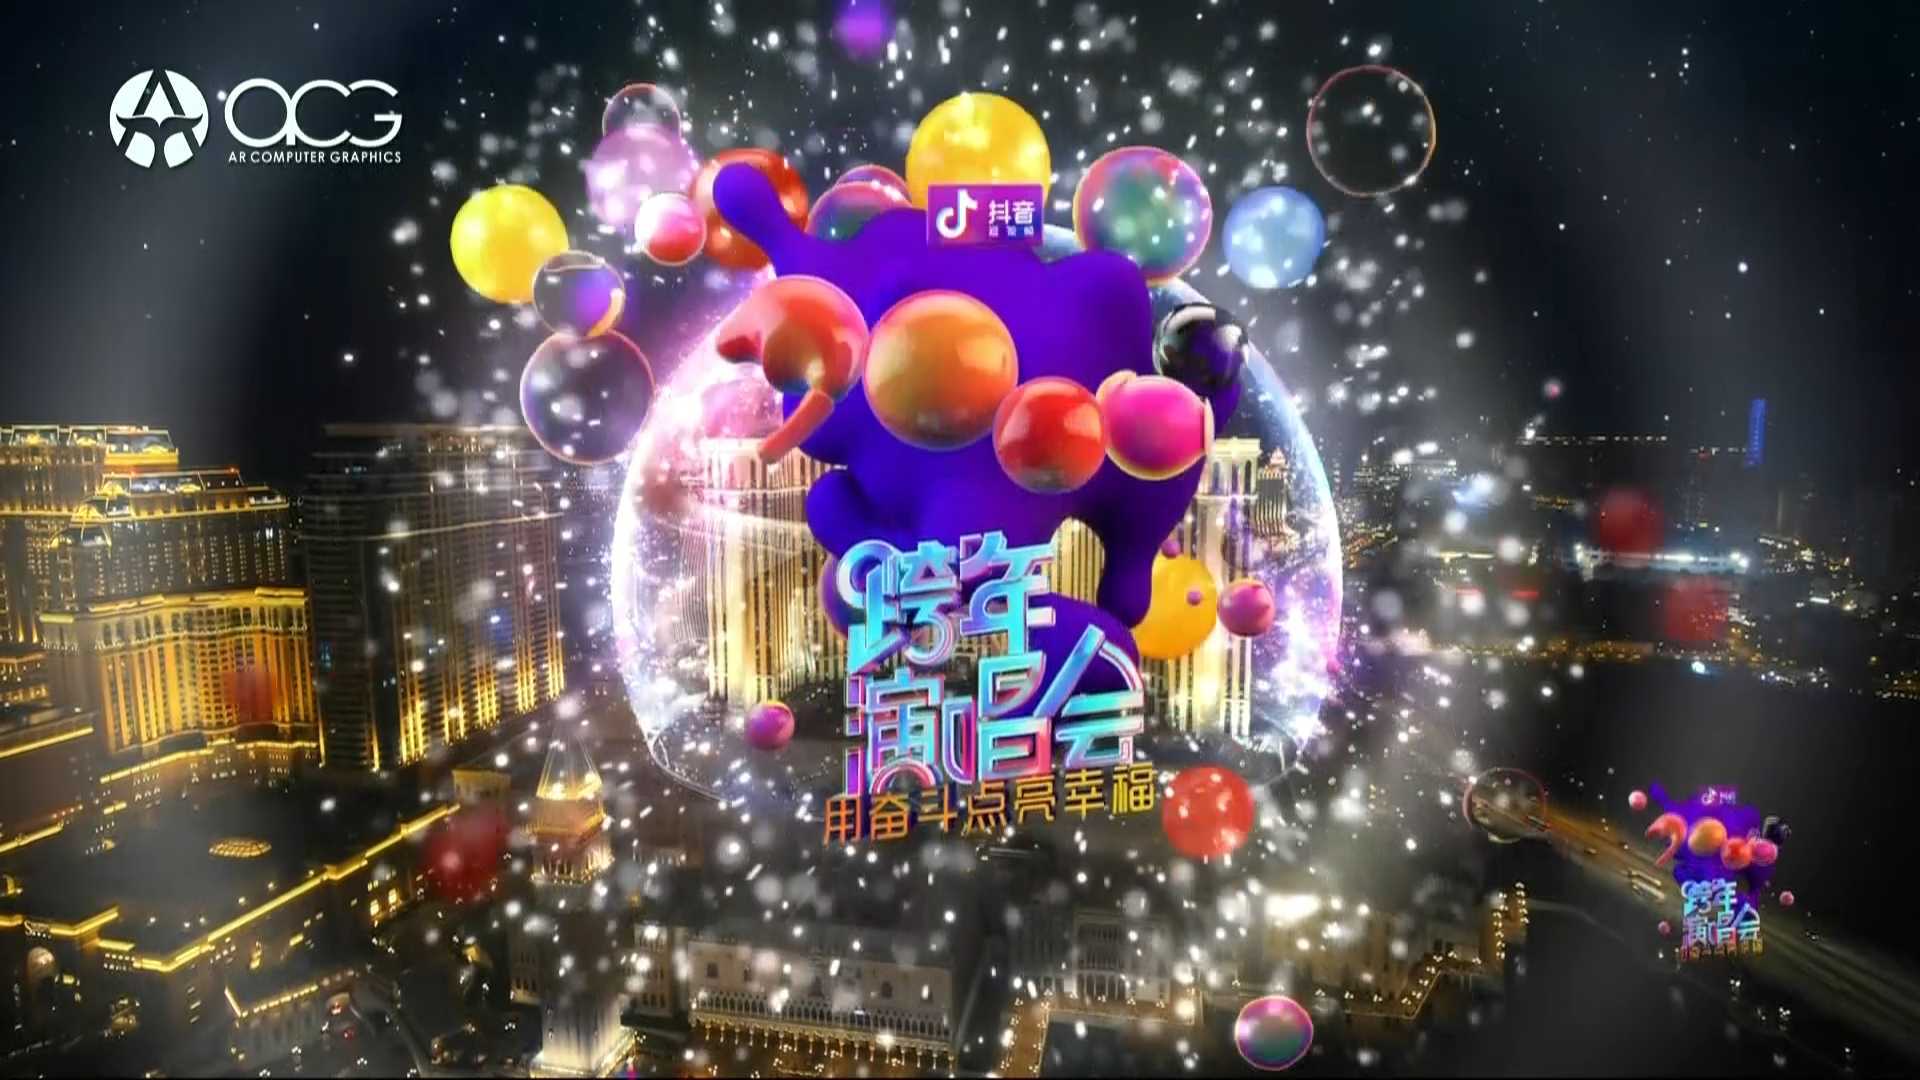 江苏卫视2019年跨年演唱会 激光开场秀